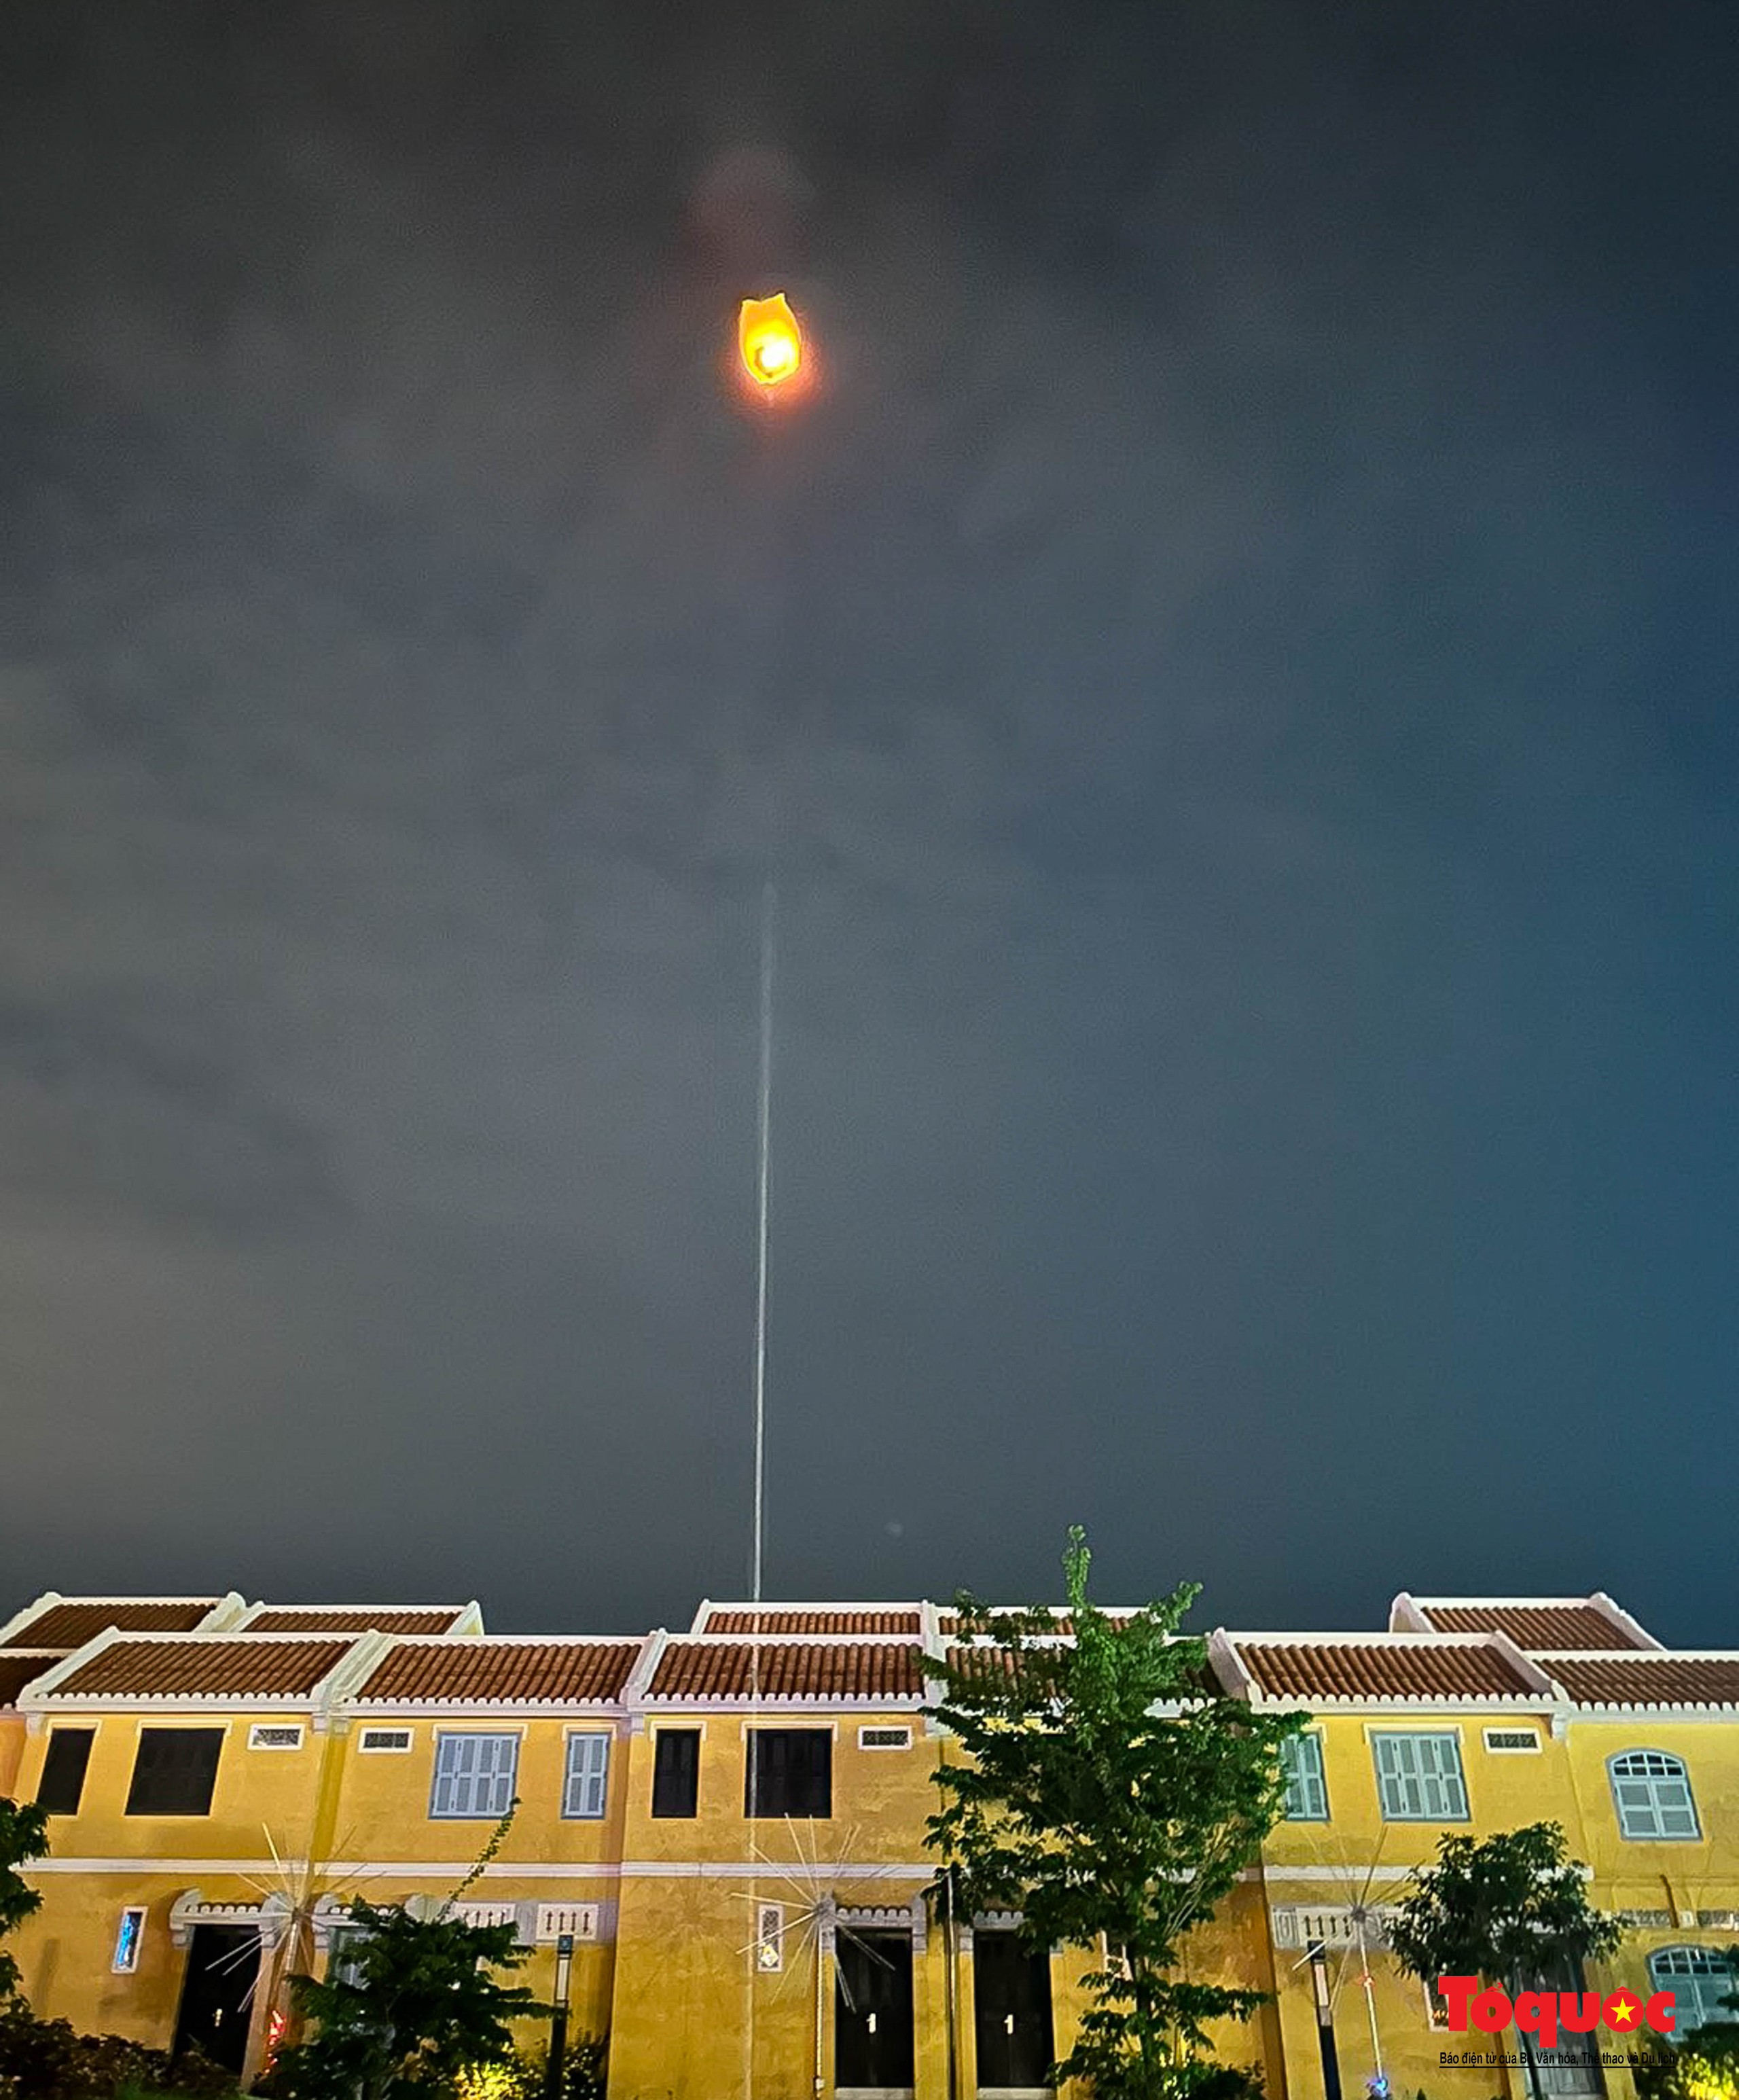 Mãn nhãn màn trình diễn ánh sáng drone light “Thắp sáng bầu trời” ở Hội An - Ảnh 8.